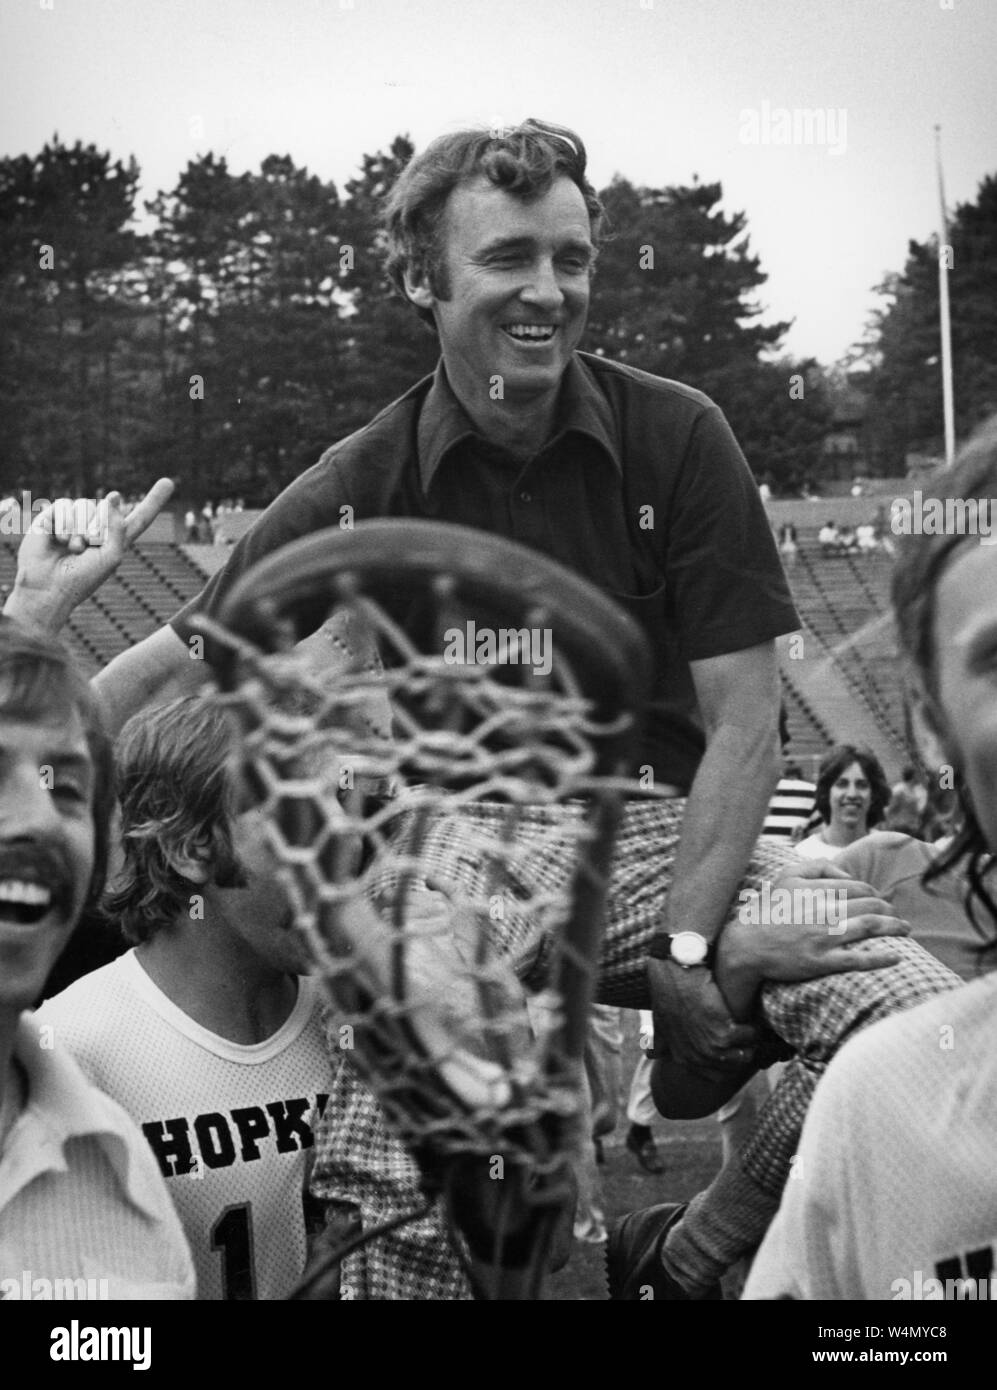 Johns Hopkins University Hall of Fame lacrosse Trainer Bob Scott Lächeln, als er sich auf den Schultern der Spieler auf seiner lacrosse Mannschaft in der Feier an der Johns Hopkins University, Baltimore, Maryland, 1976 ruht. Historische Fotografien aus der Sammlung. () Stockfoto